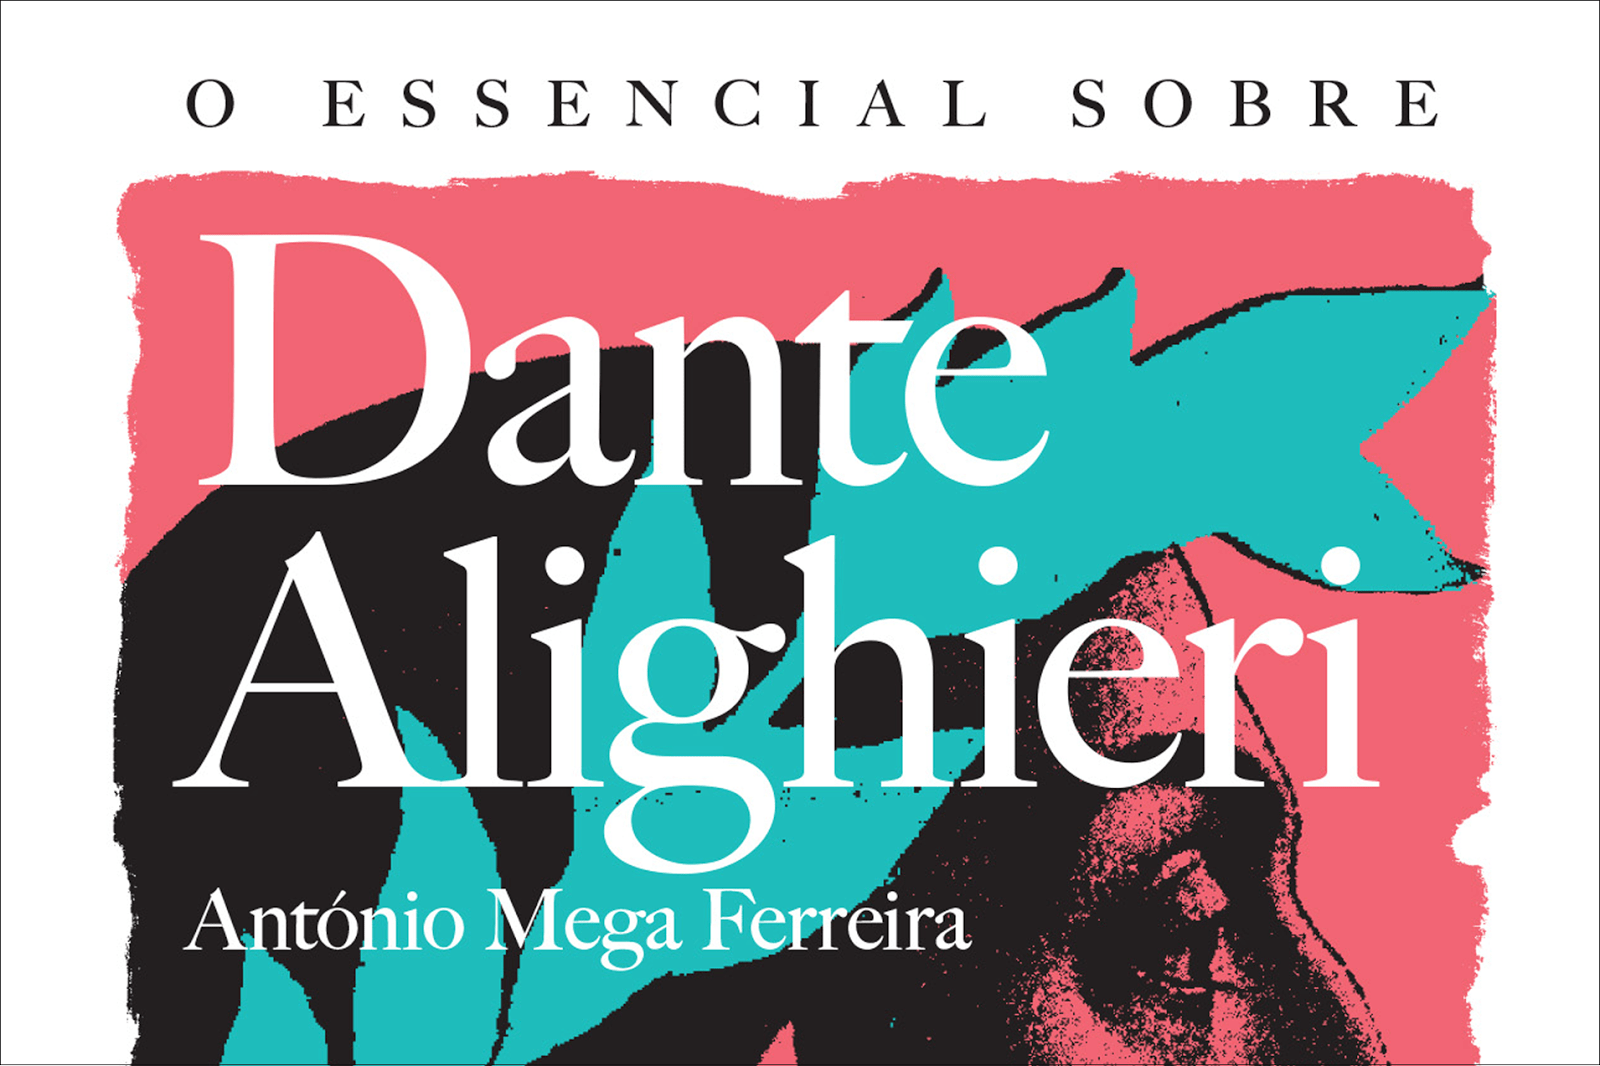 O Essencial sobre Dante Alighieri, de António Mega Ferreira